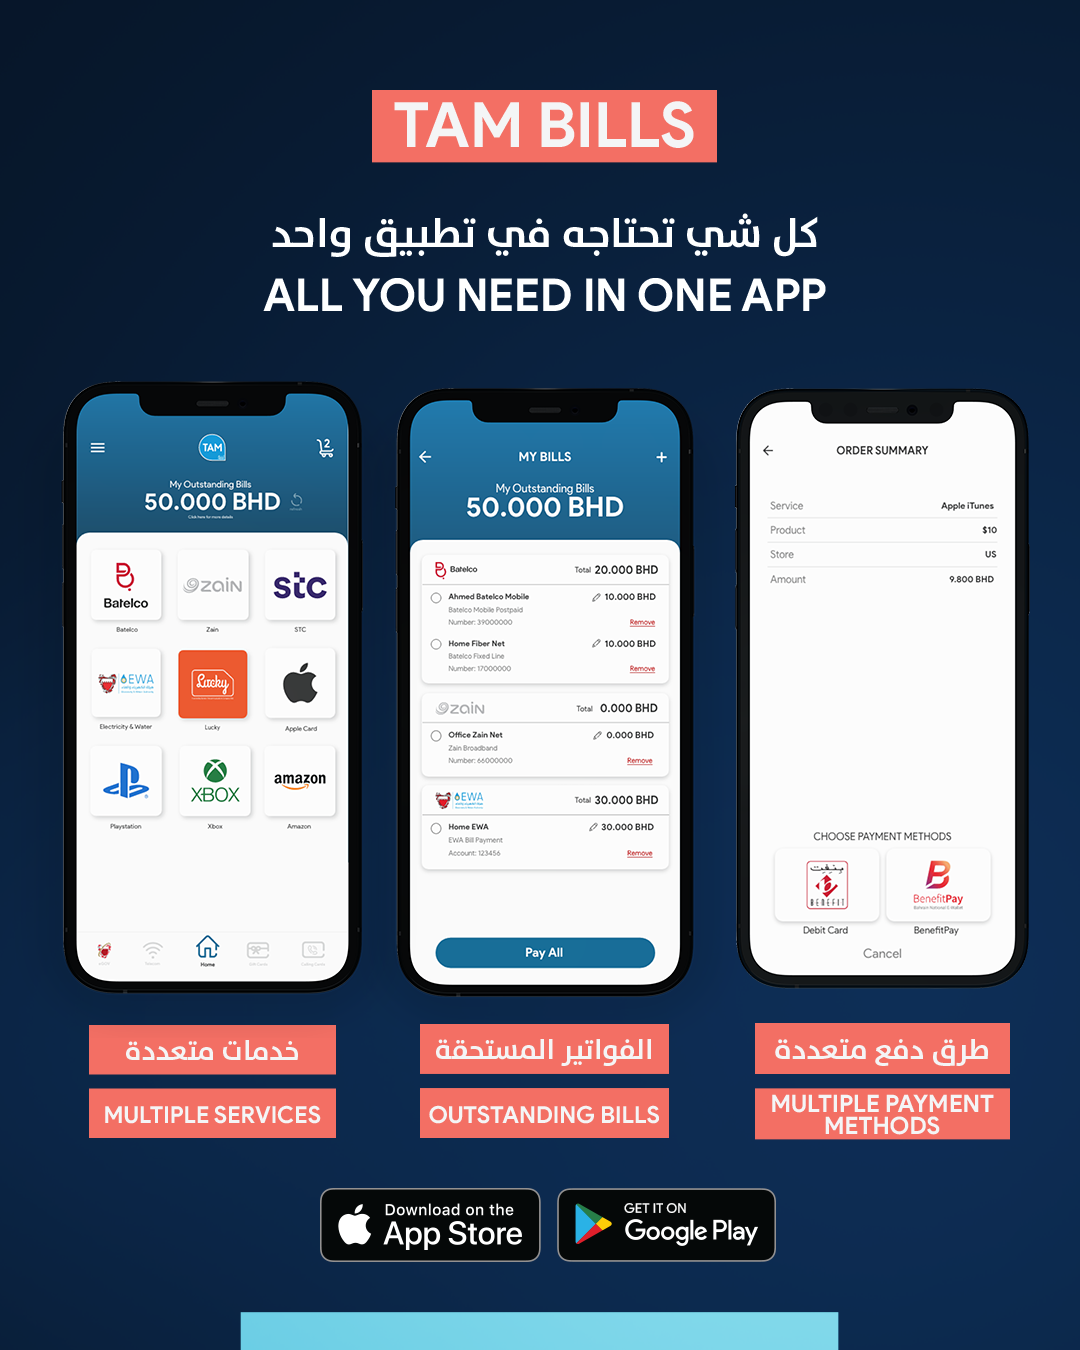 TAM Bills App Launches In Bahrain